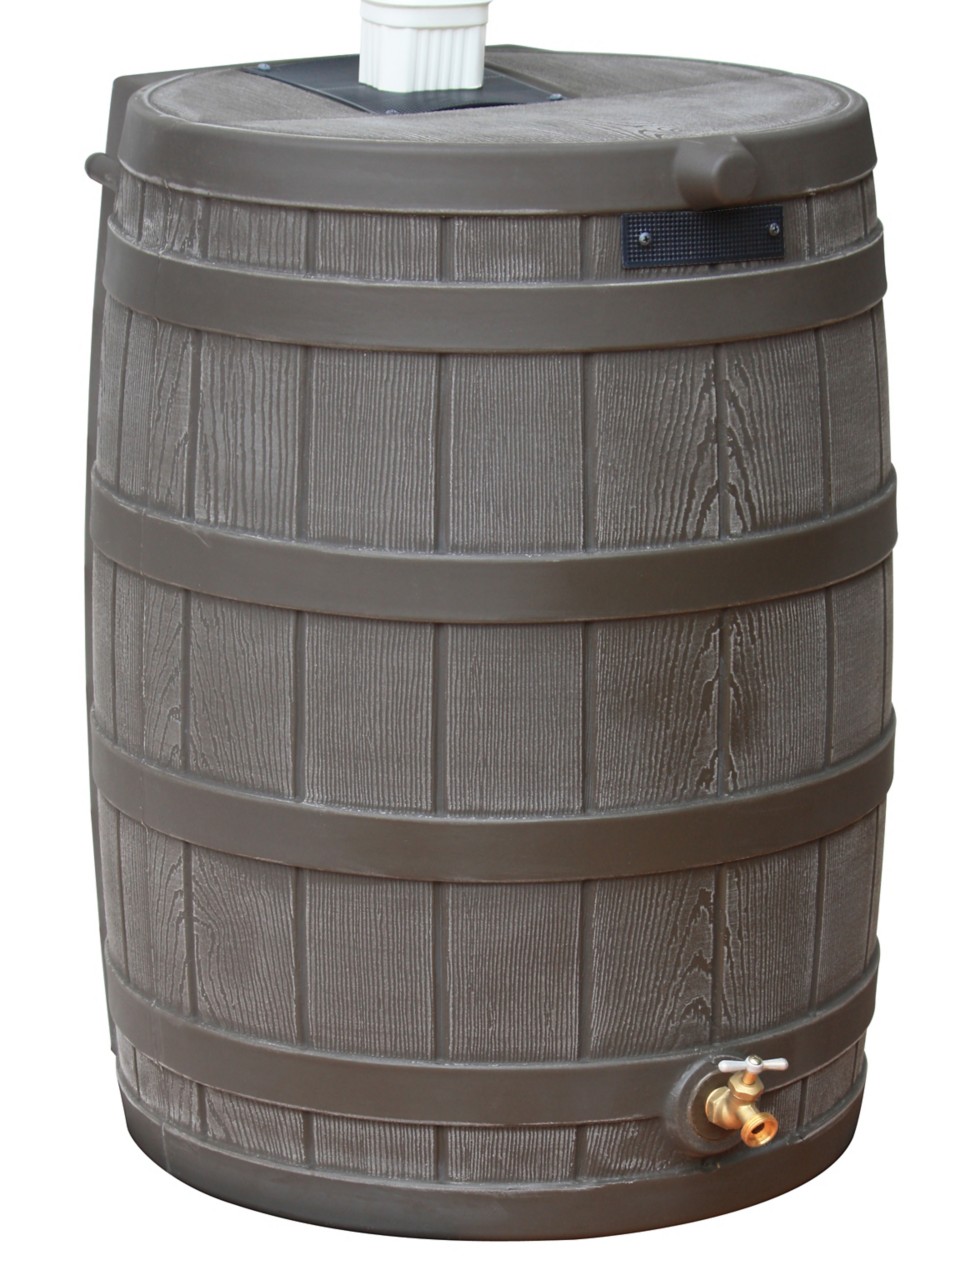 Image of a rain barrel that links to all rain barrels catalog.